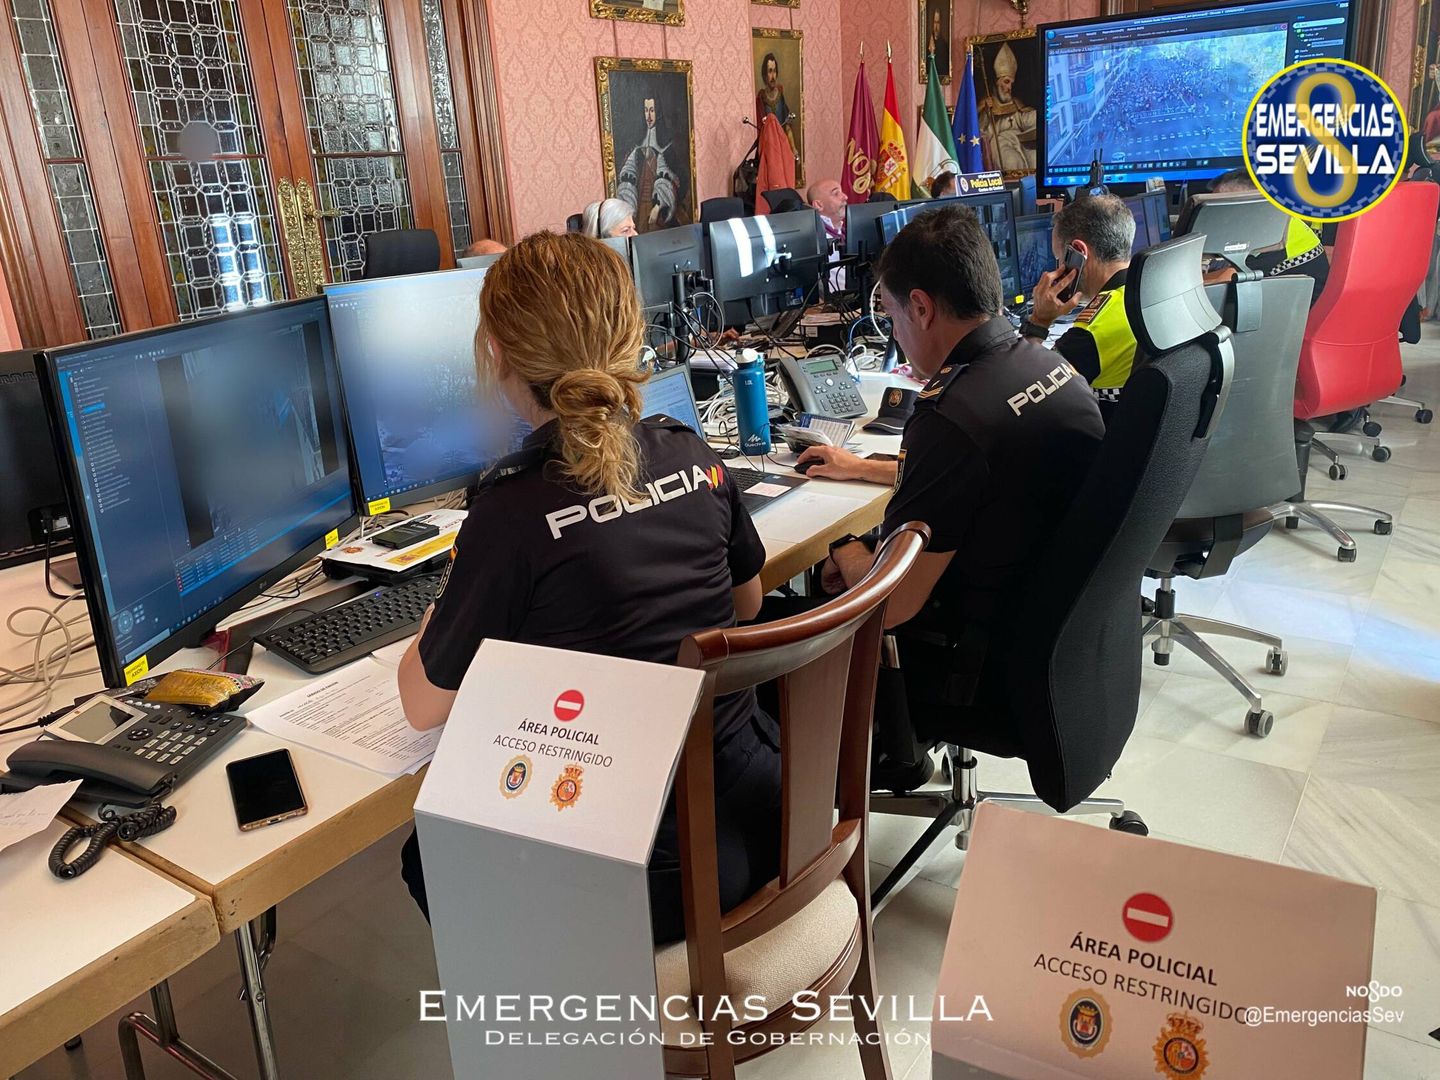 Centro de coordinación de emergencias para Semana Santa en el Ayuntamiento de Sevilla. (Cecop)